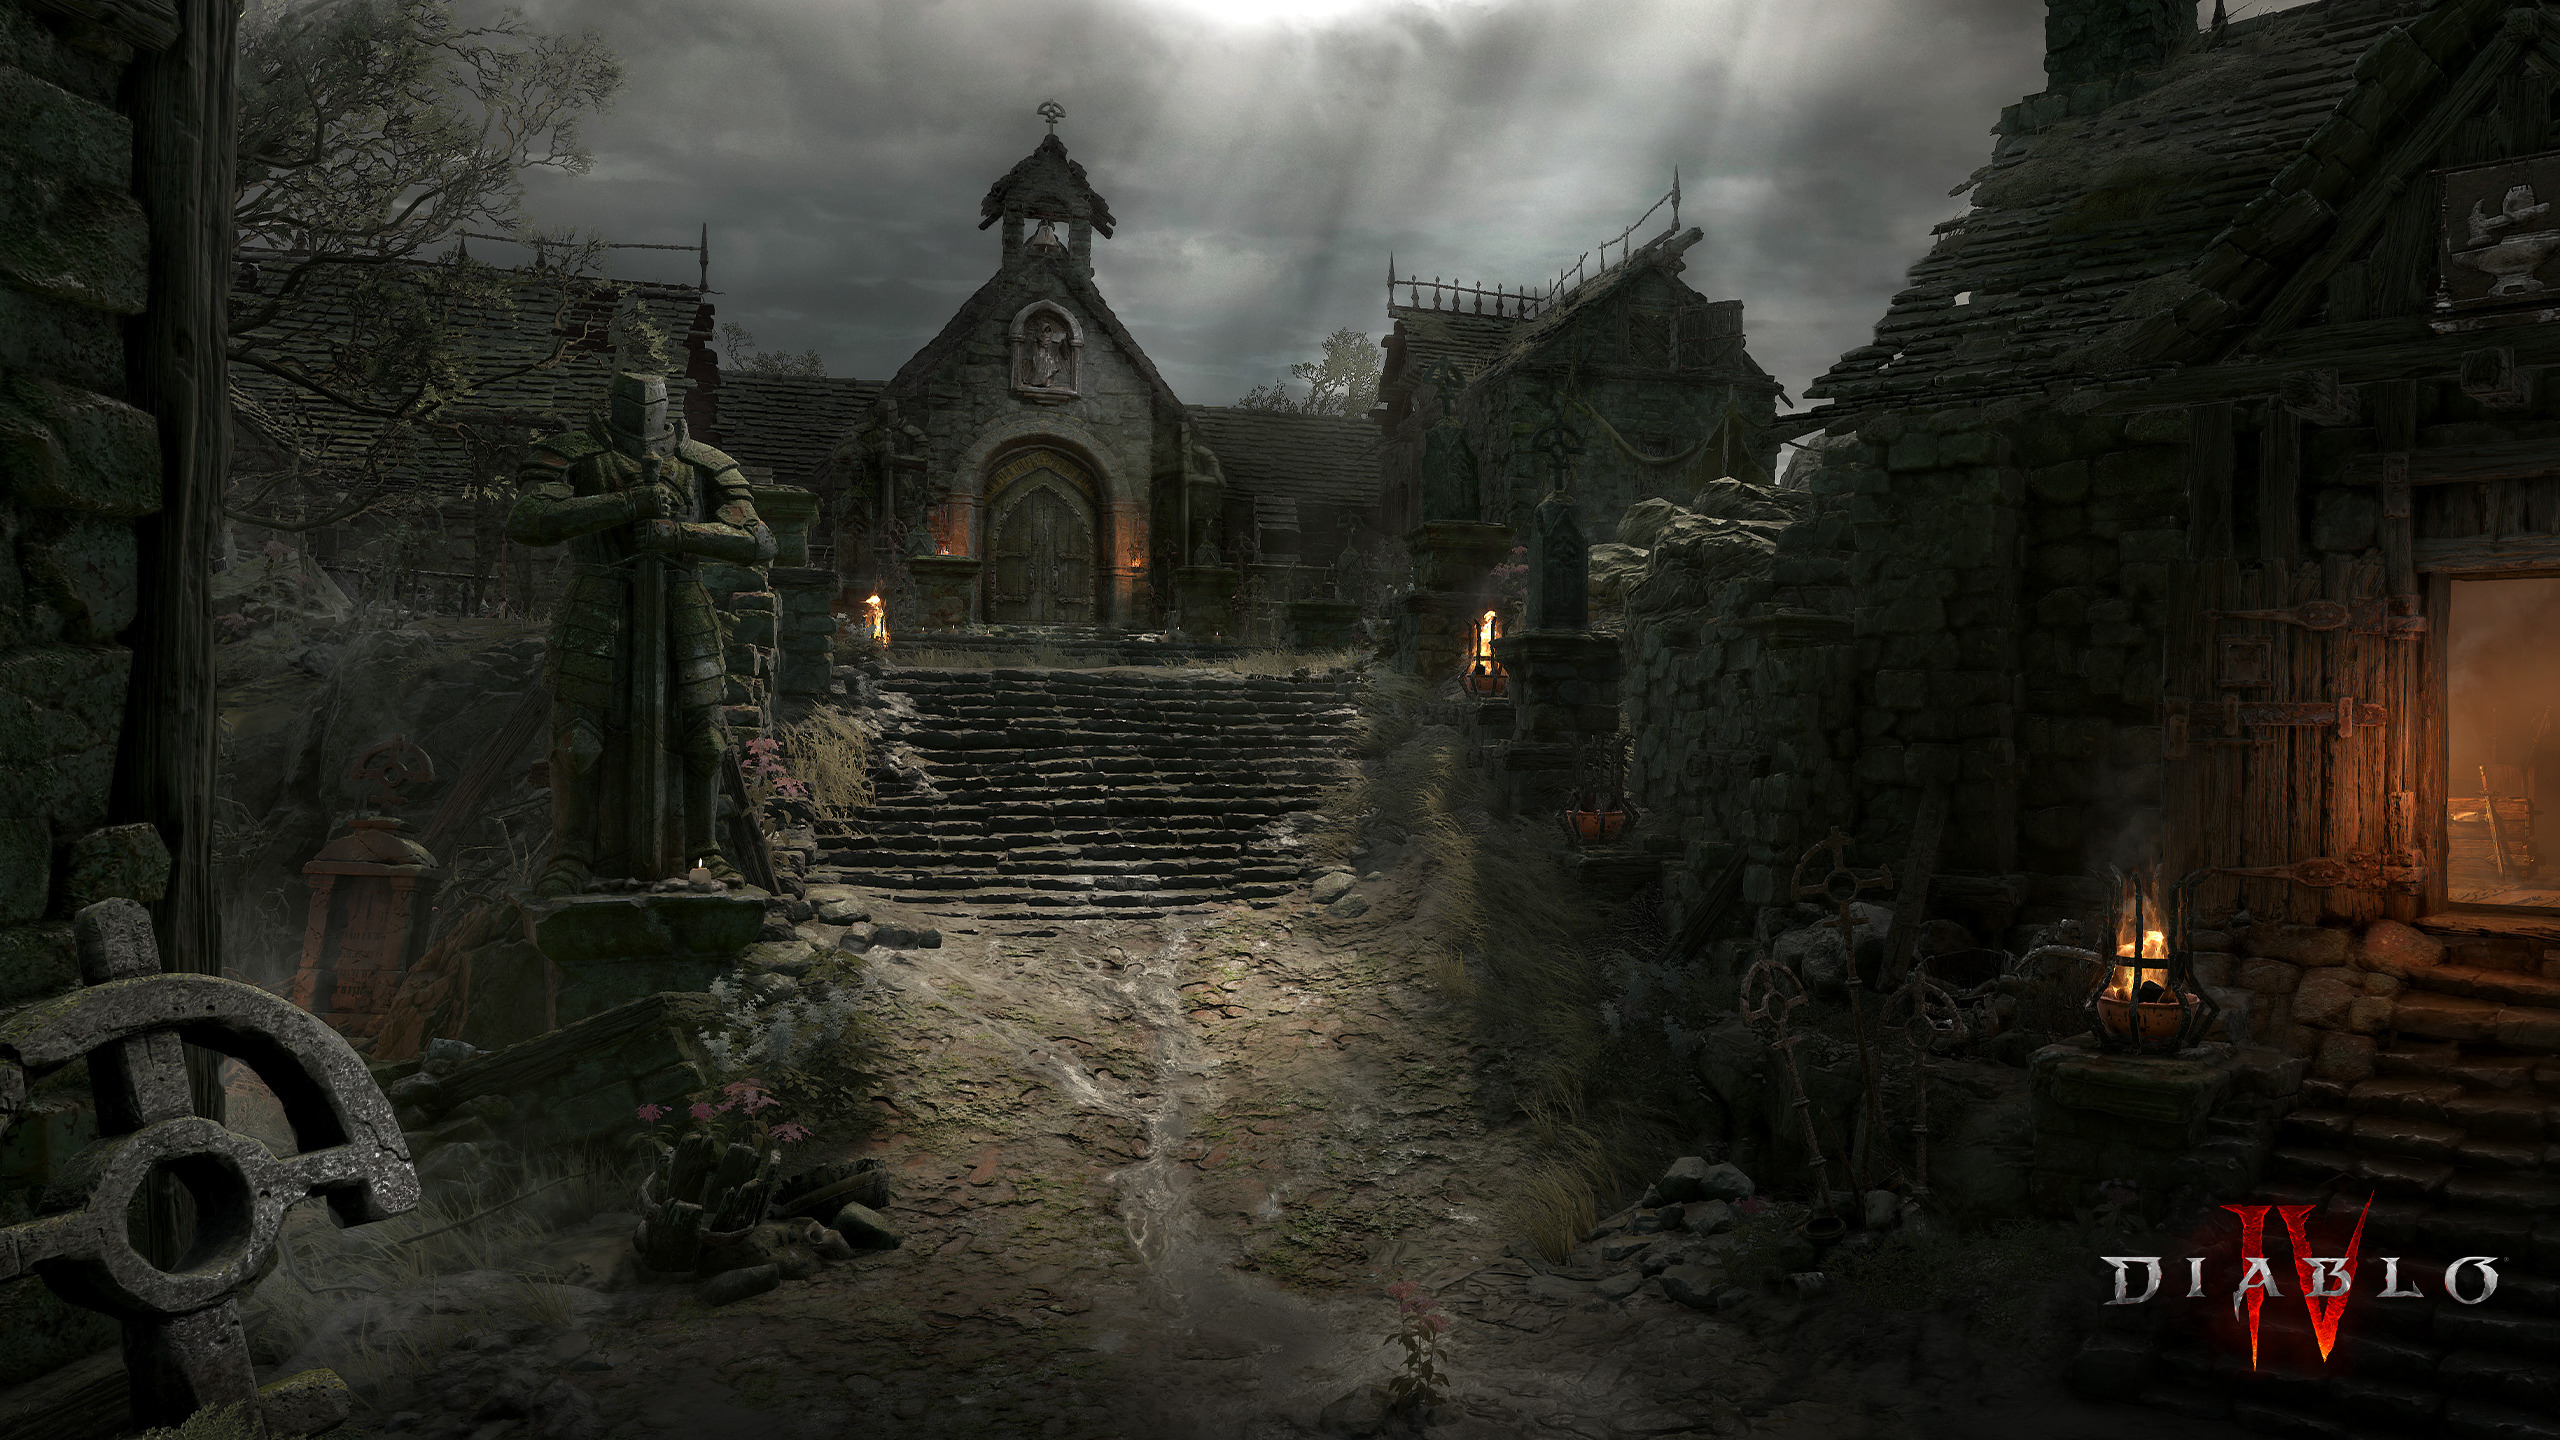 Diablo Diablo IV Video Games Stairs Video Game Art Clouds Sky Sunlight 2560x1440